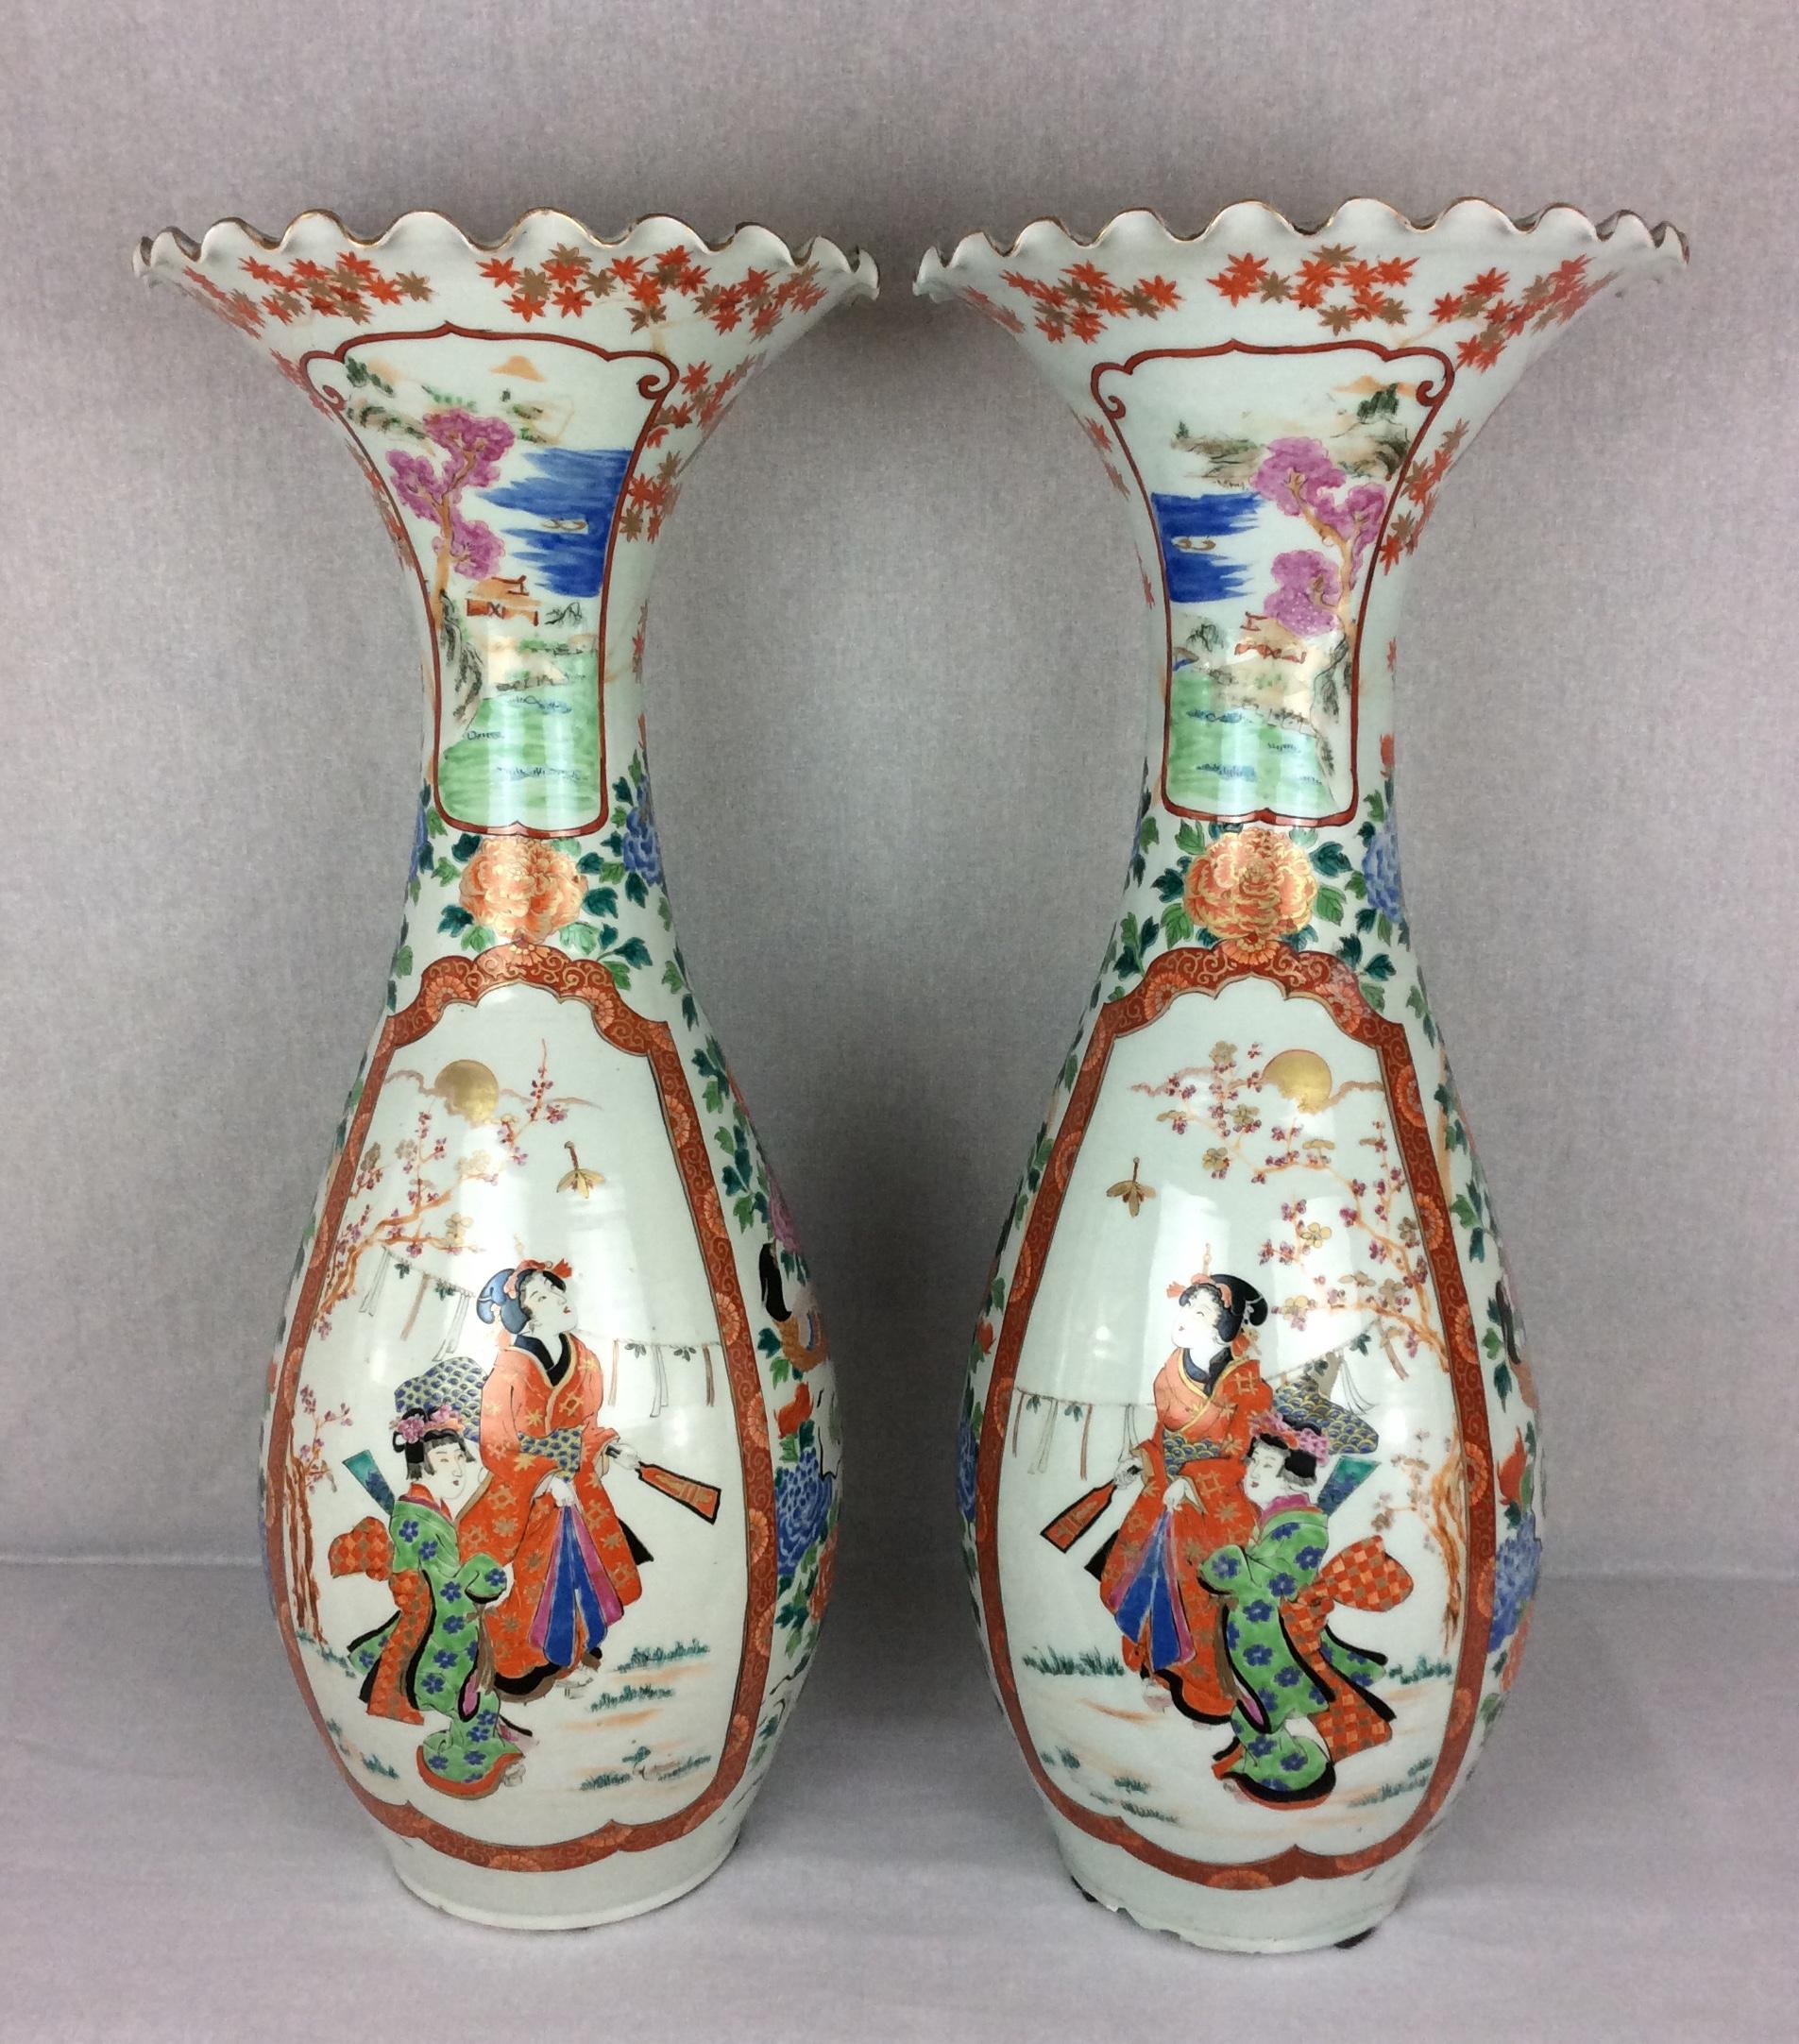 Paar antiker japanischer trompetenförmiger Bodenvasen aus Imari-Porzellan, Meiji-Periode, um 1900.
Diese schönen japanischen trompetenförmigen Bodenvasen sind mit polychromer Emaille mit Vögeln, Blumen und traditionellem japanischem Dekor verziert.